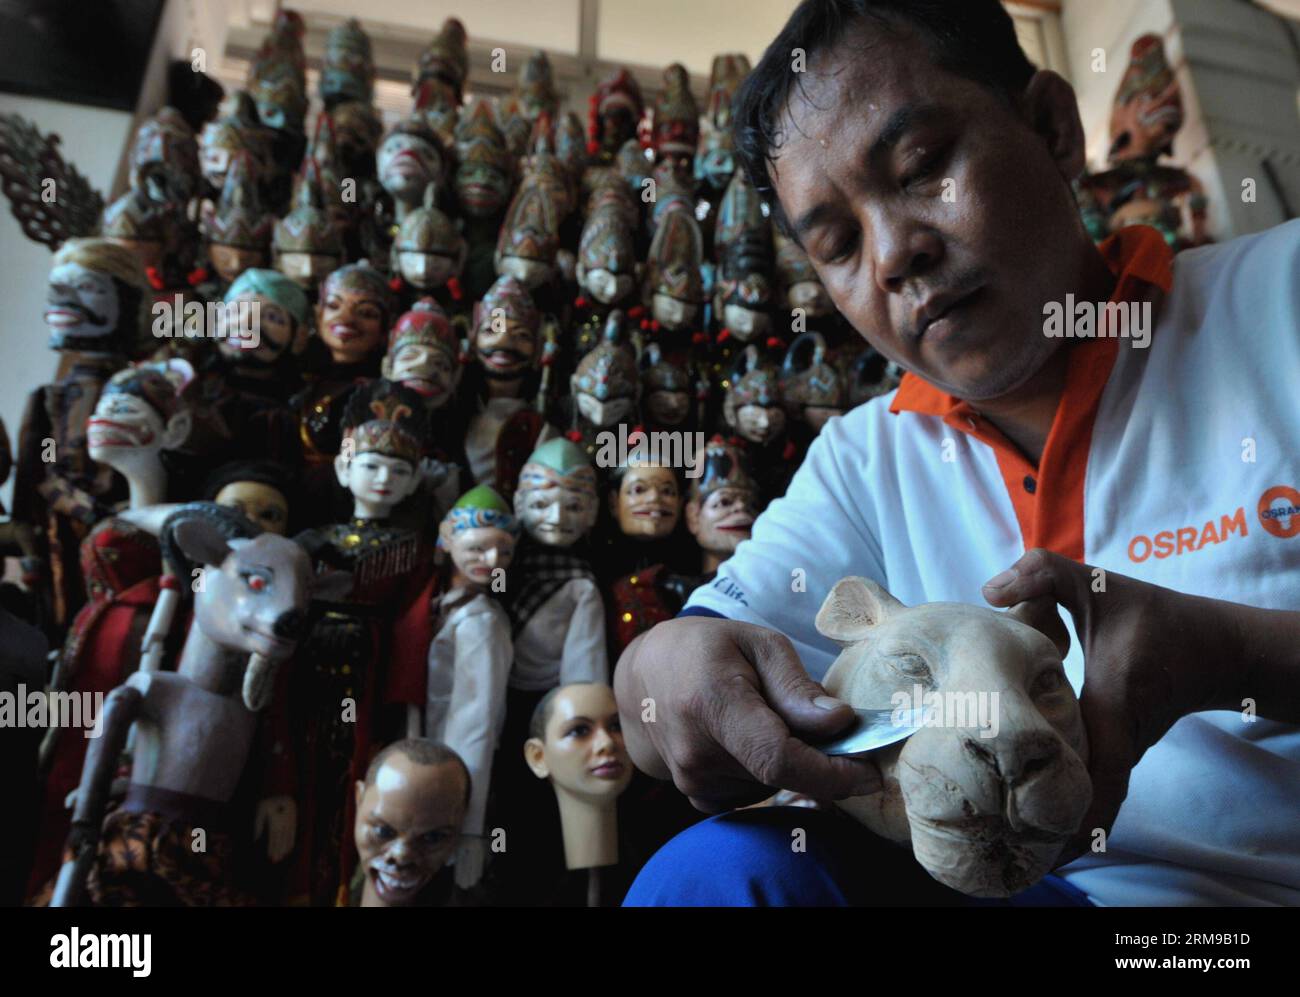 (140516) -- YAKARTA, 16 de mayo de 2014 (Xinhua) -- Un trabajador hace una marioneta de madera en un taller de arte en Sunter, en Yakarta Norte, Indonesia, 16 de mayo de 2014. (Xinhua/Agung Kuncahya B.) INDONESIA-YAKARTA-TITLE TALLER PUBLICATIONxNOTxINxCHN Yakarta Mayo 16 2014 XINHUA Un trabajador hace una marioneta de madera EN el taller de arte EN Yakarta Norte Indonesia Mayo 16 2014 XINHUA Agung Kuncahya B Indonesia Yakarta Taller de marionetas PUBLICATIONxNOTxINXINXINXCHN Foto de stock